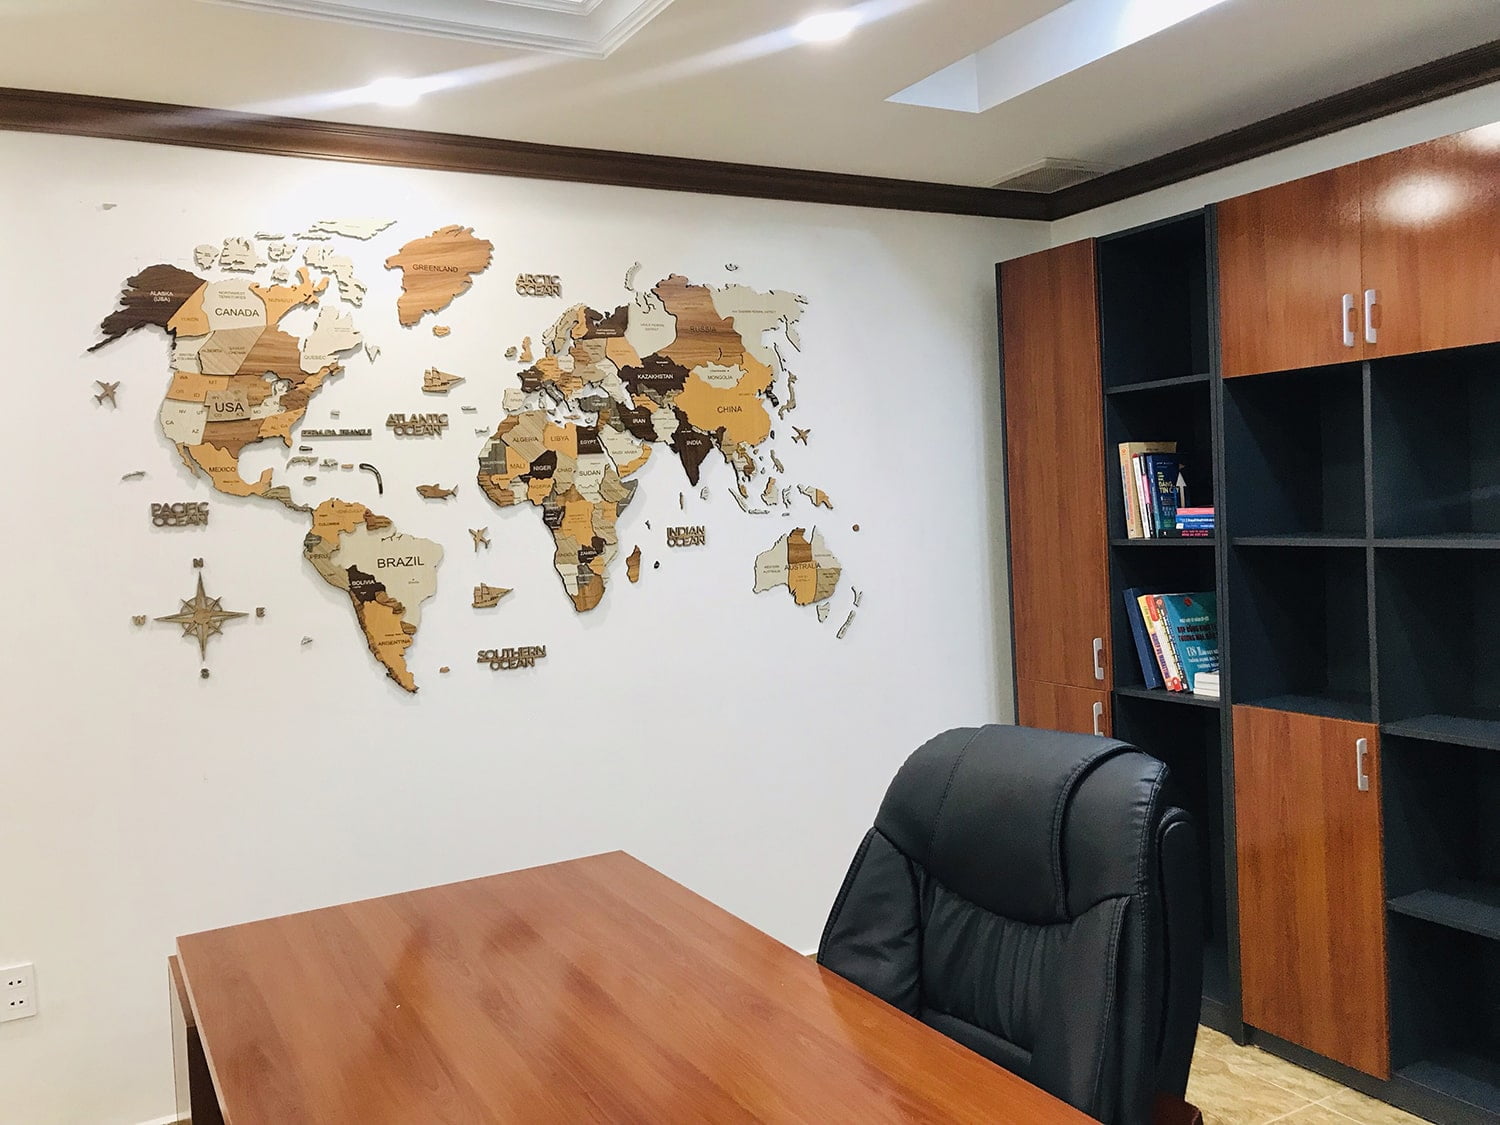 Tranh bản đồ gỗ 3d gắn tại văn phòng